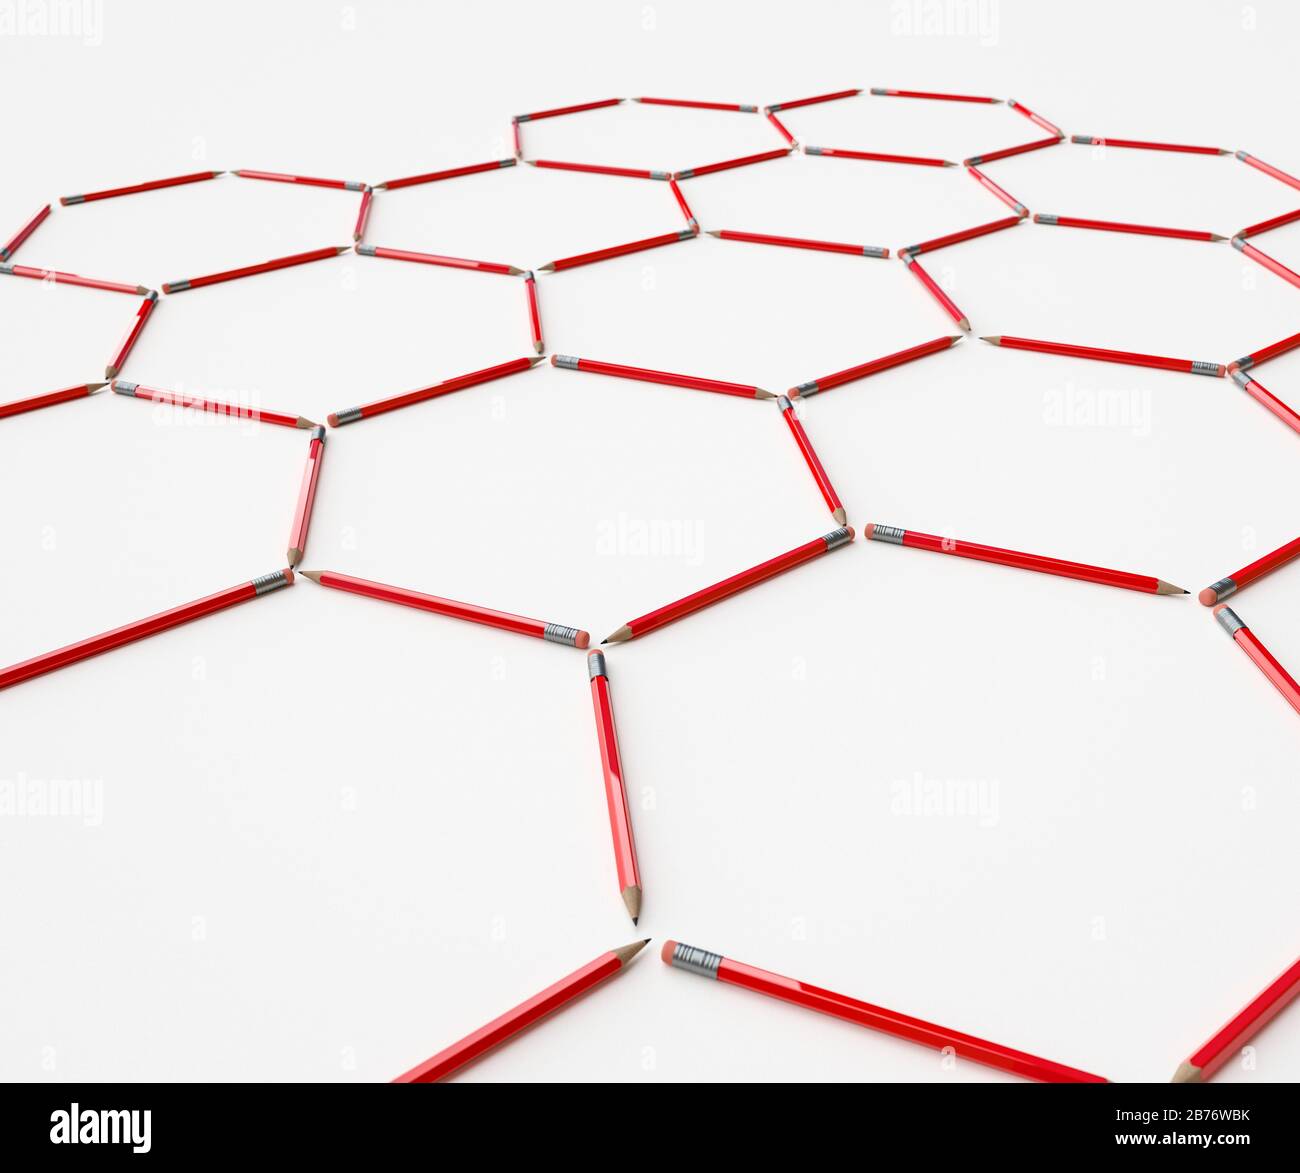 Graphitstifte, die die hexagonale Bildung eines Gitters von Graphen-Atomen darstellen Stockfoto